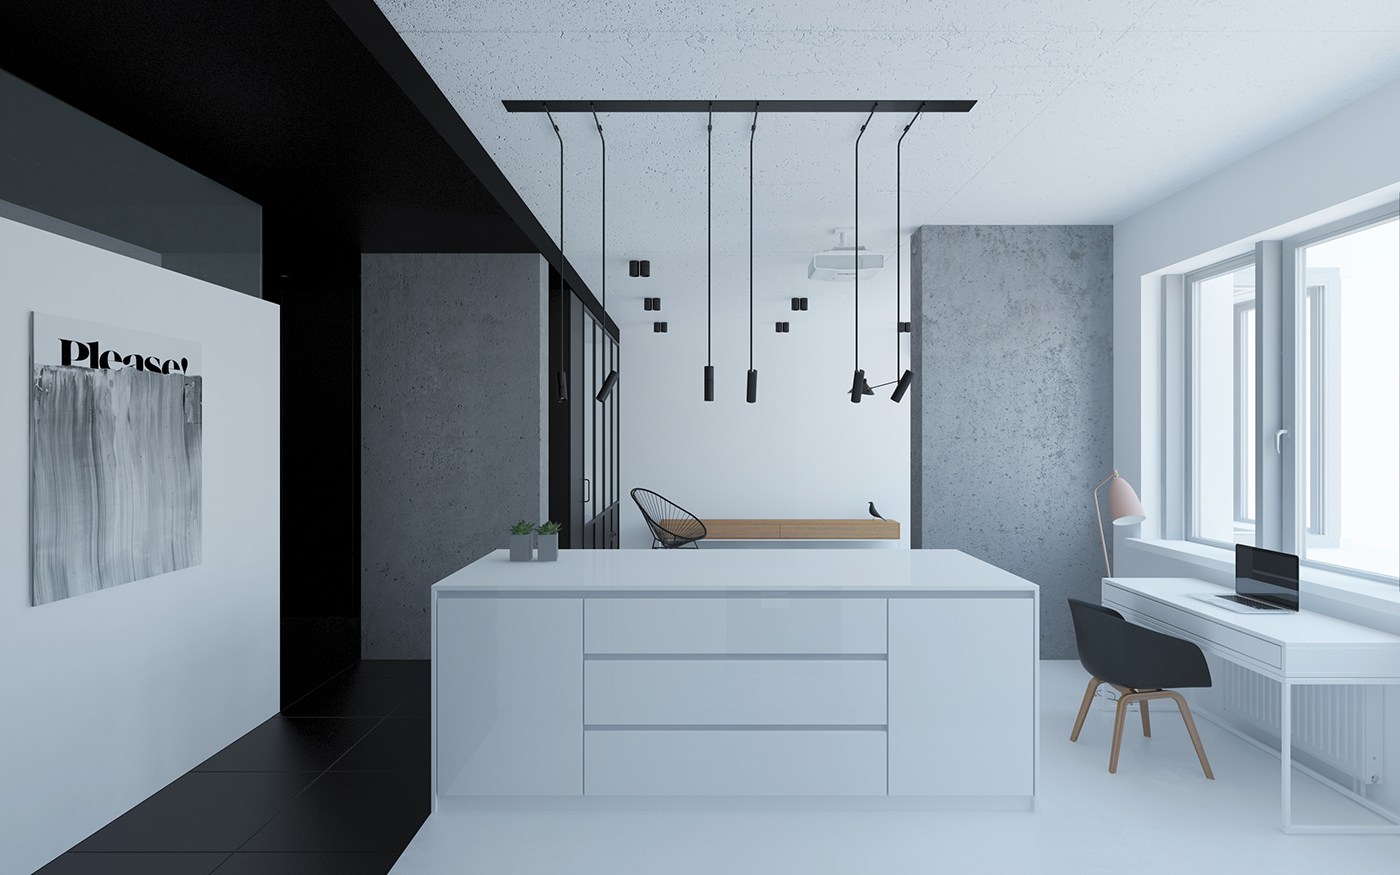 Black and white kitchen design